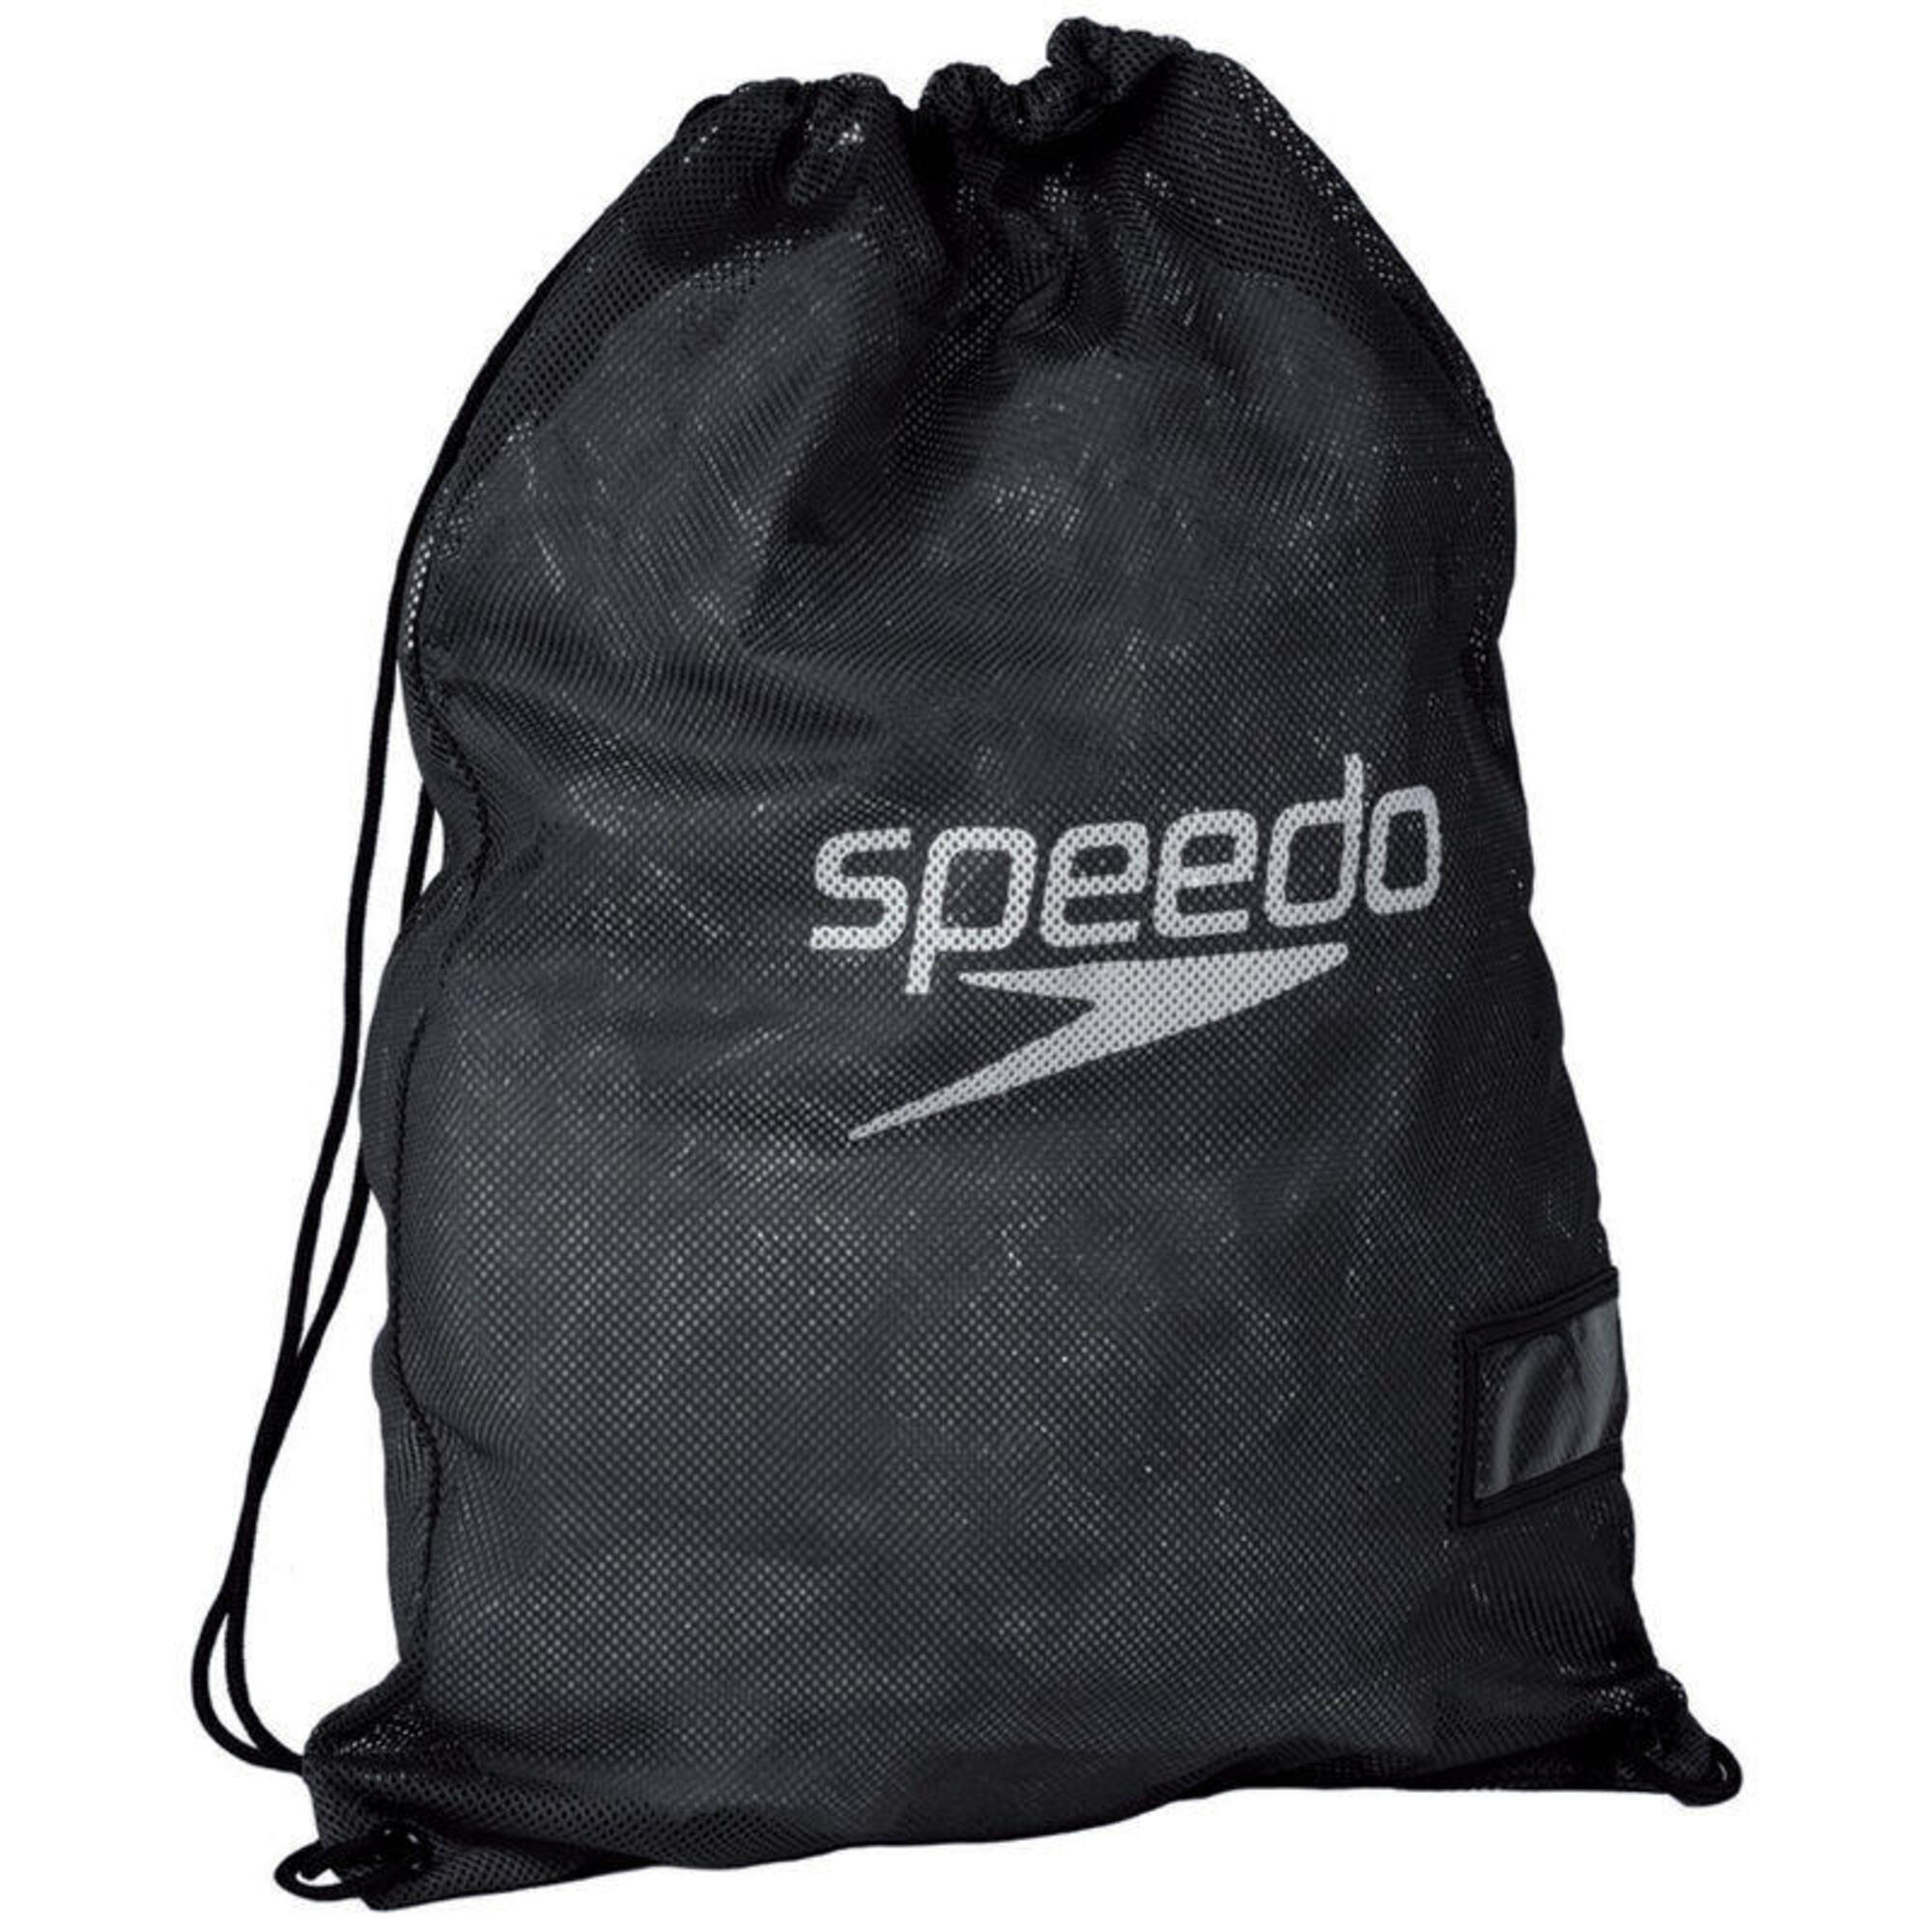 Speedo Equipment Mesh Wet Kit Bag - Black 1/5